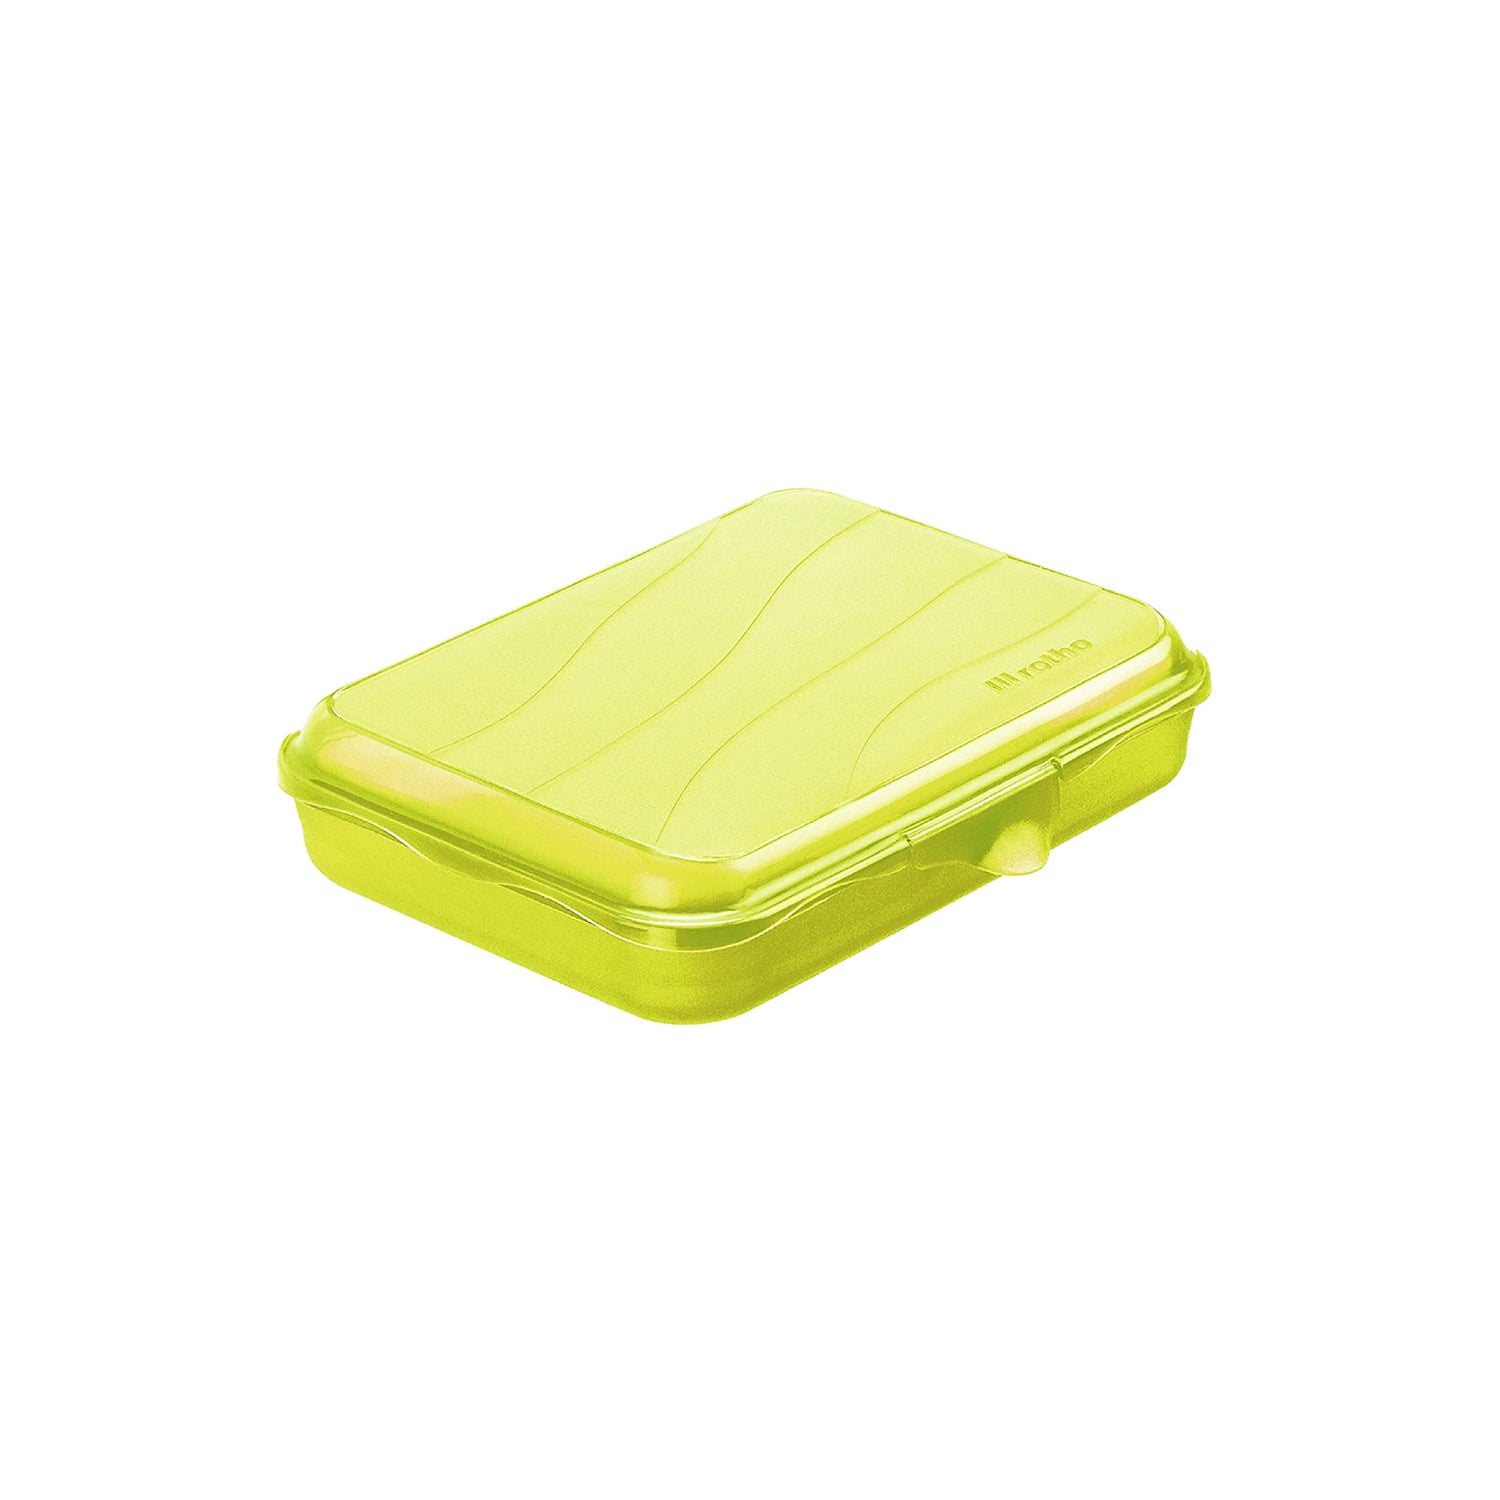 Lunch Box with Clip Closure 0.75L l FUN